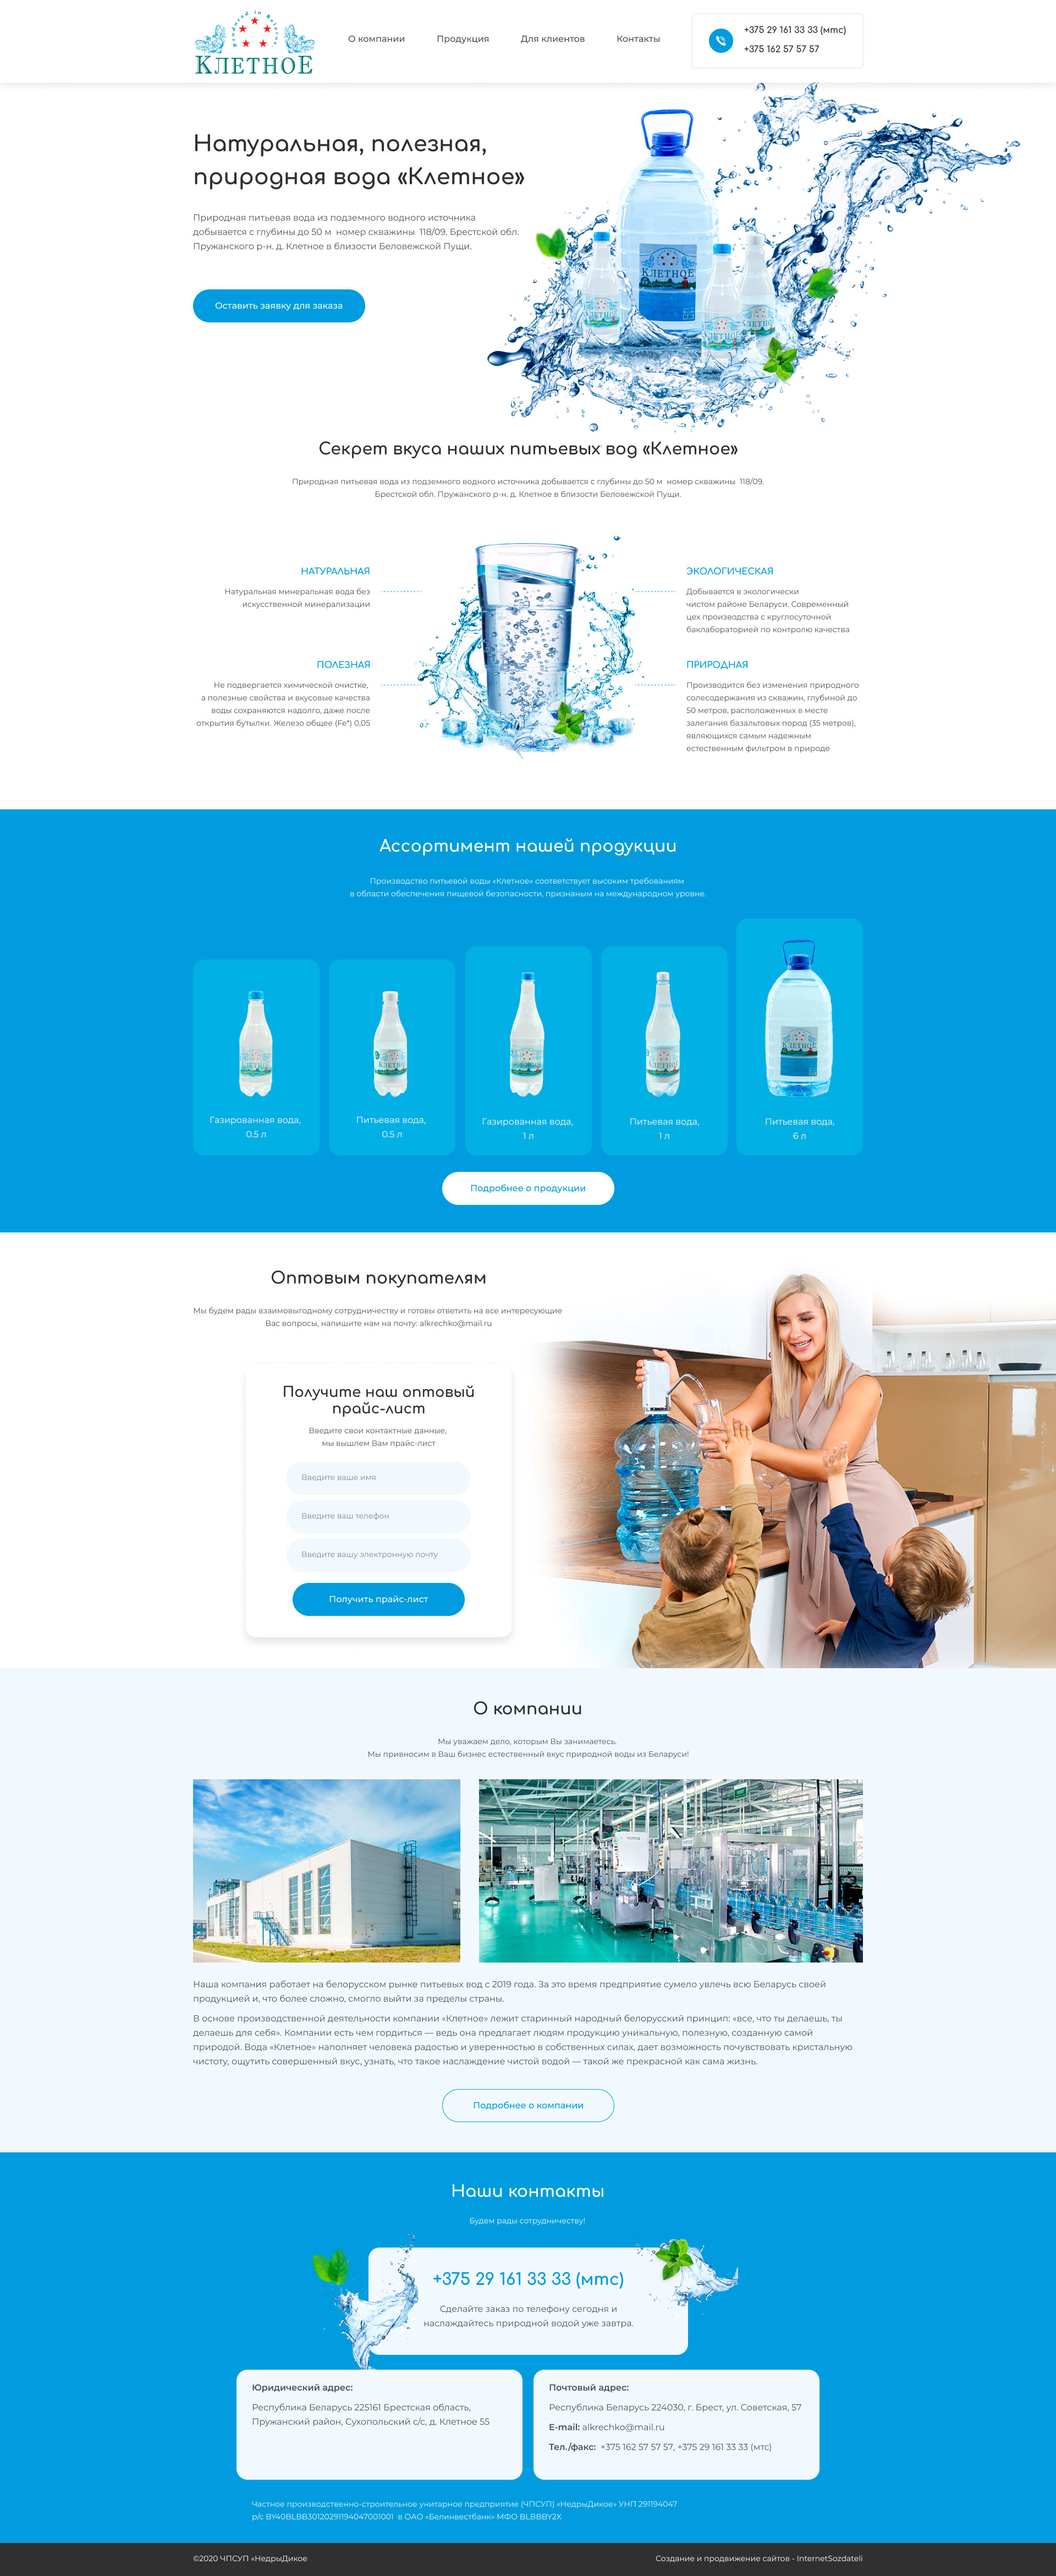 Разработка сайта по продаже артезианской воды - главная 